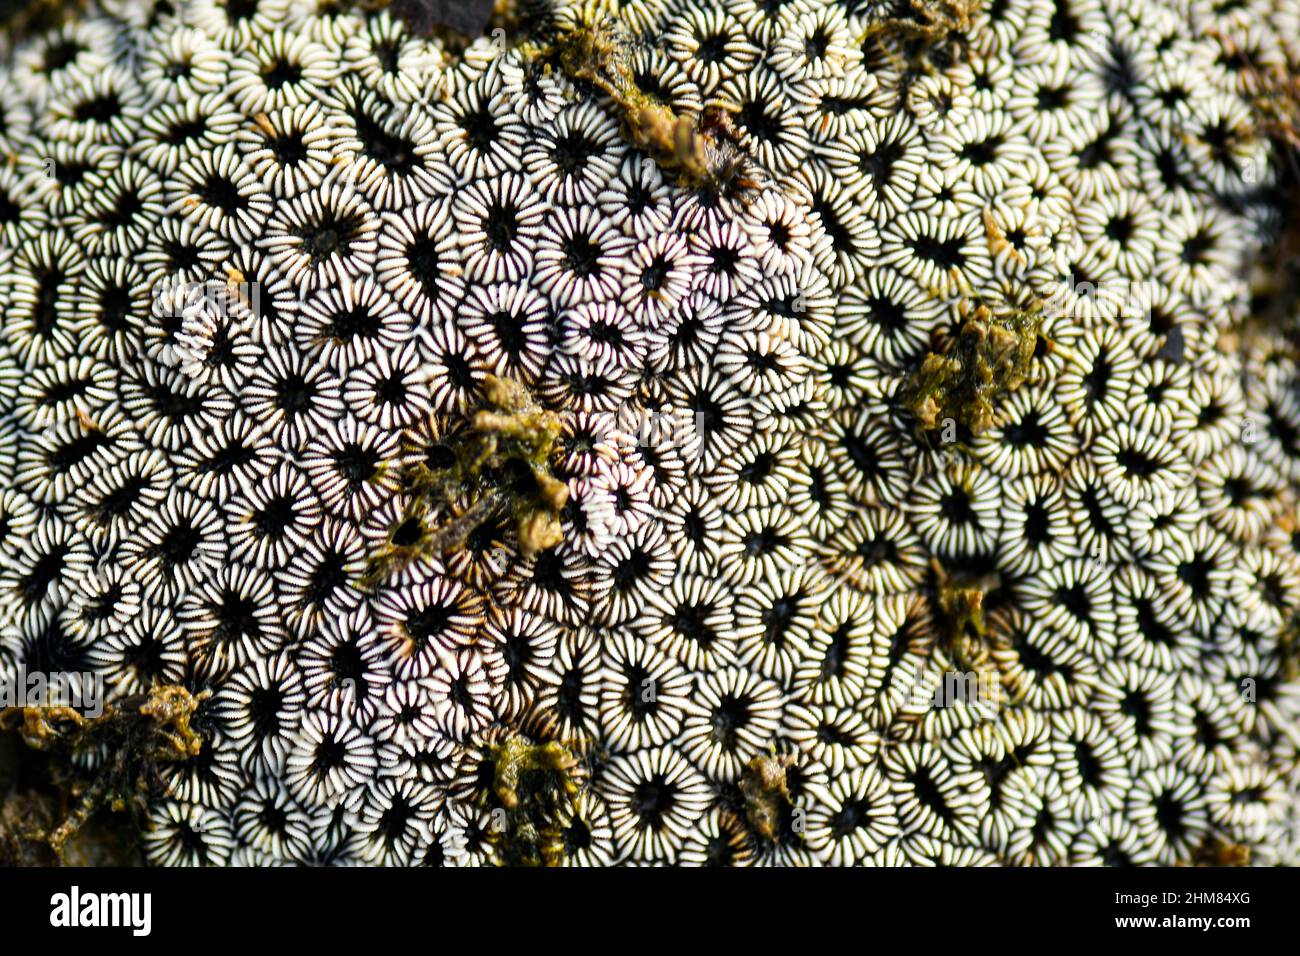 Las criaturas marinas forman patrones en los fondos marinos. Foto de stock